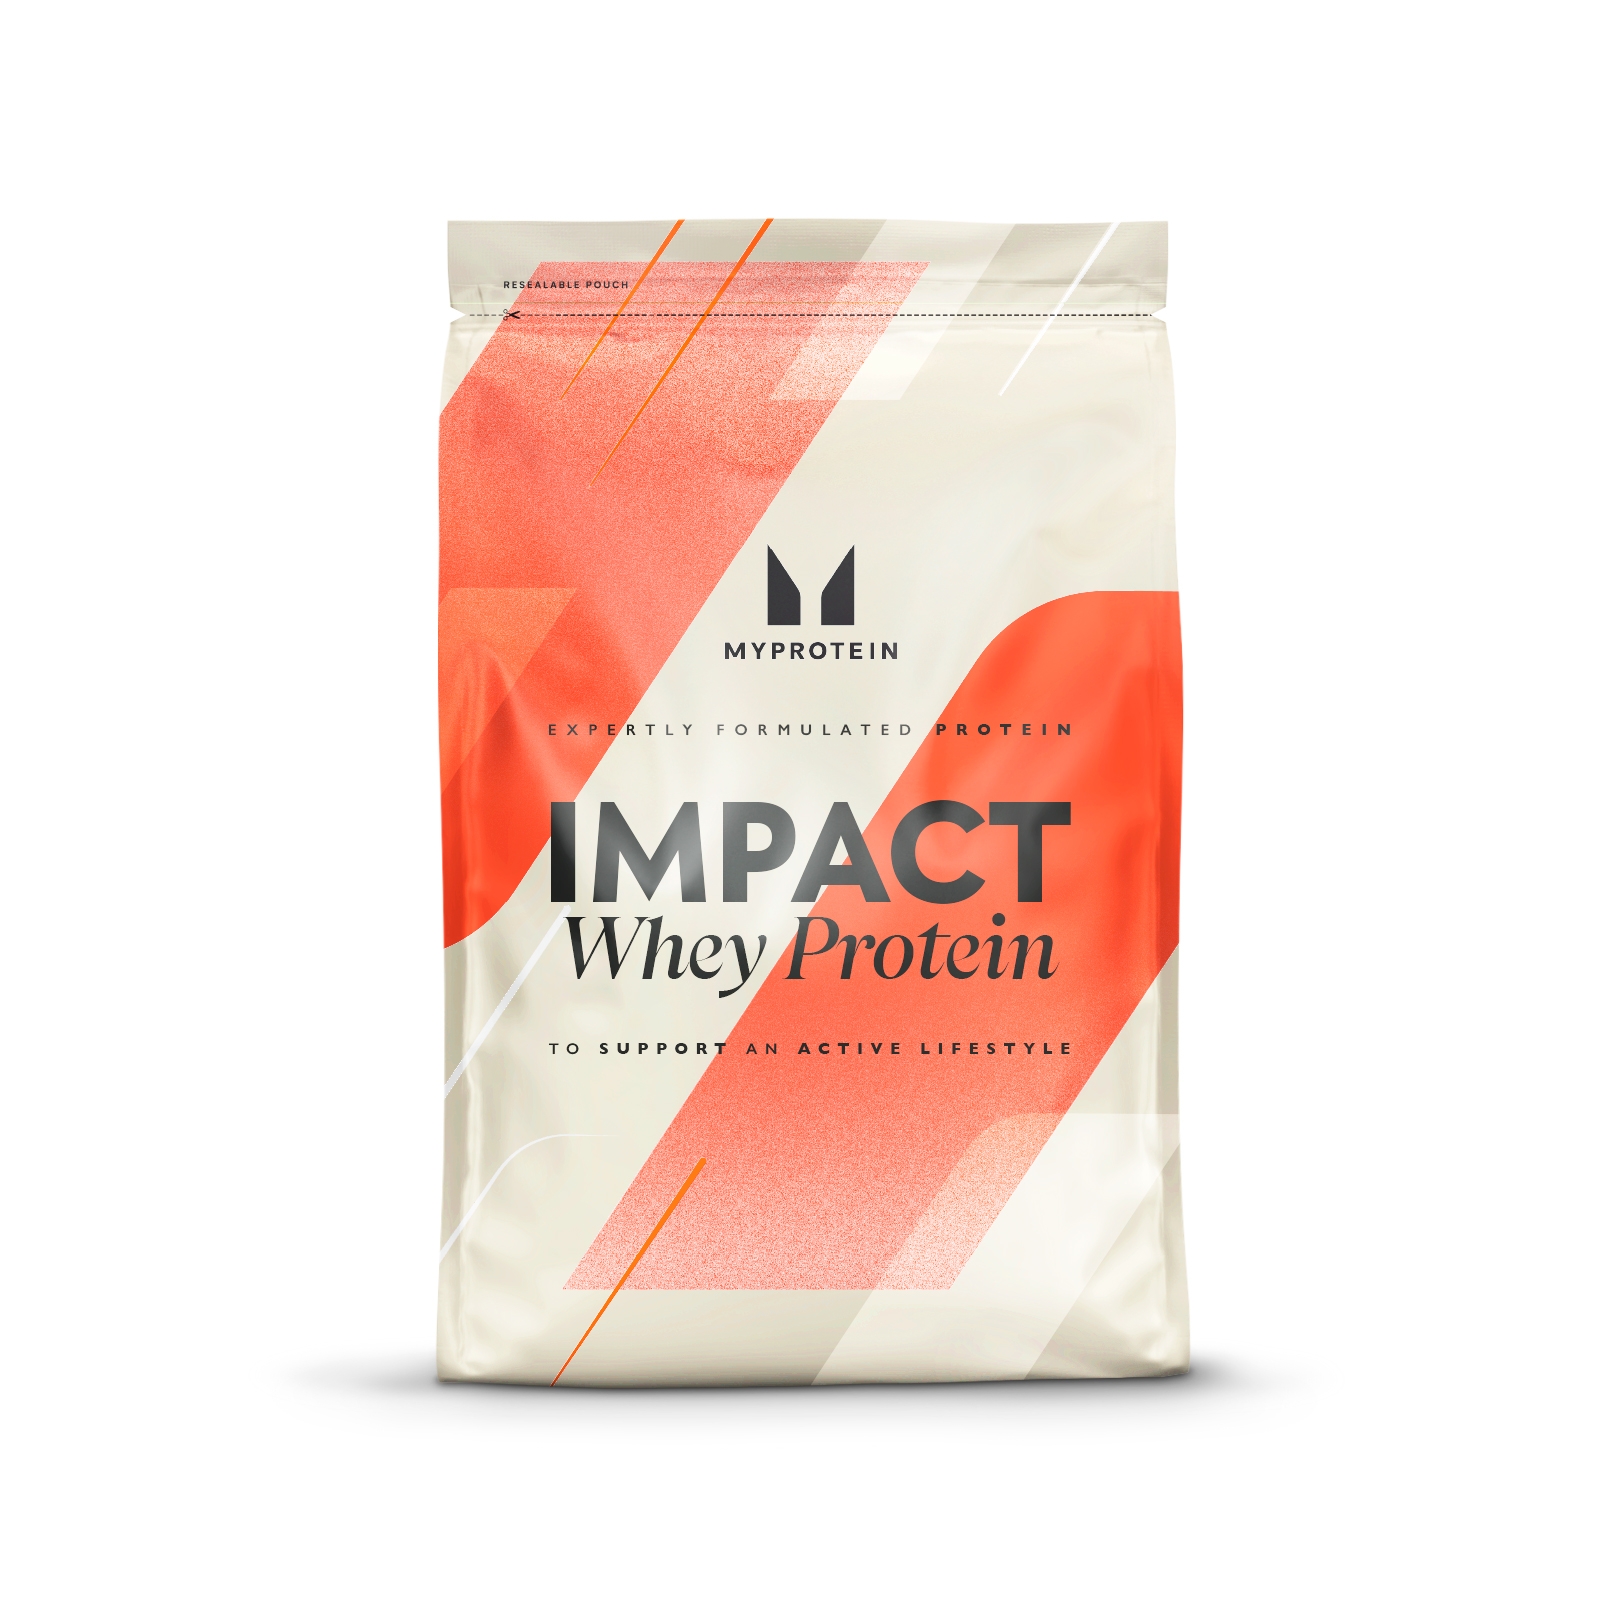 Image of Impact Whey Protein - 2.5kg - Burro di arachidi al cioccolato